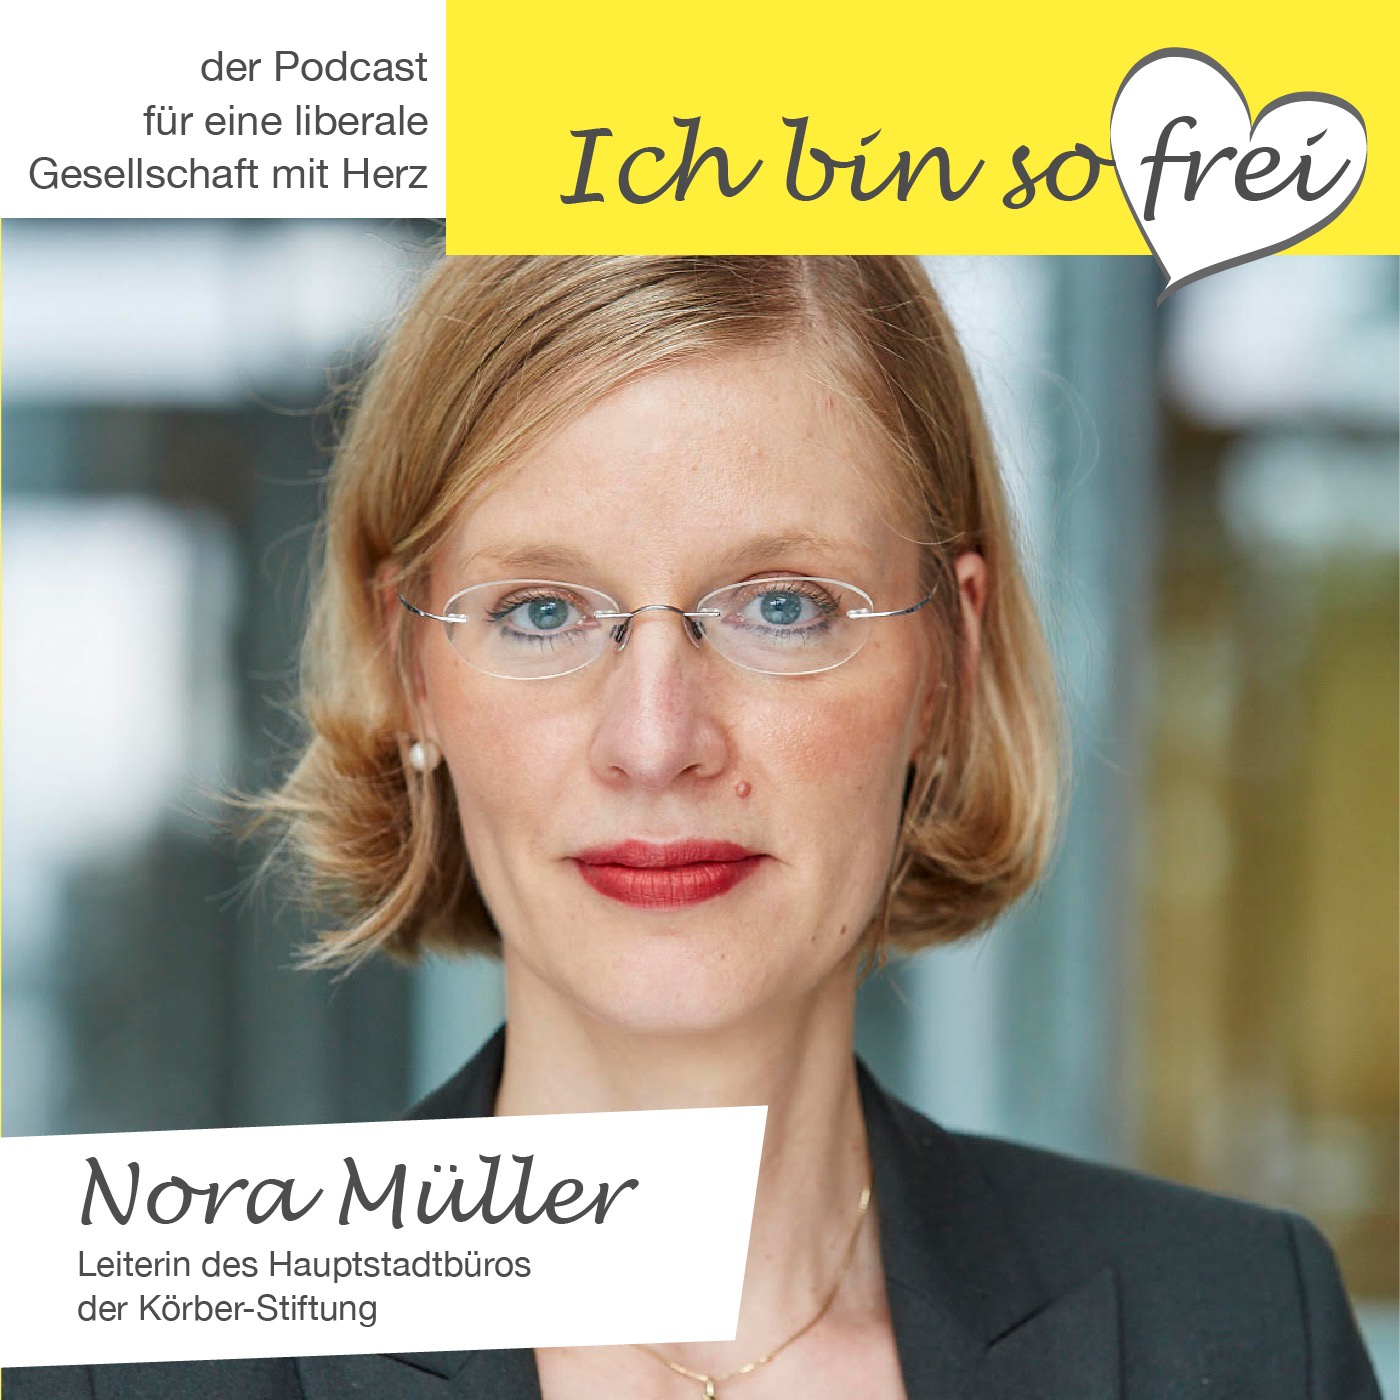 #4 Nora Müller über das hohe öffentliche Interesse an Außenpolitik und Dialog in schwierigen Zeiten